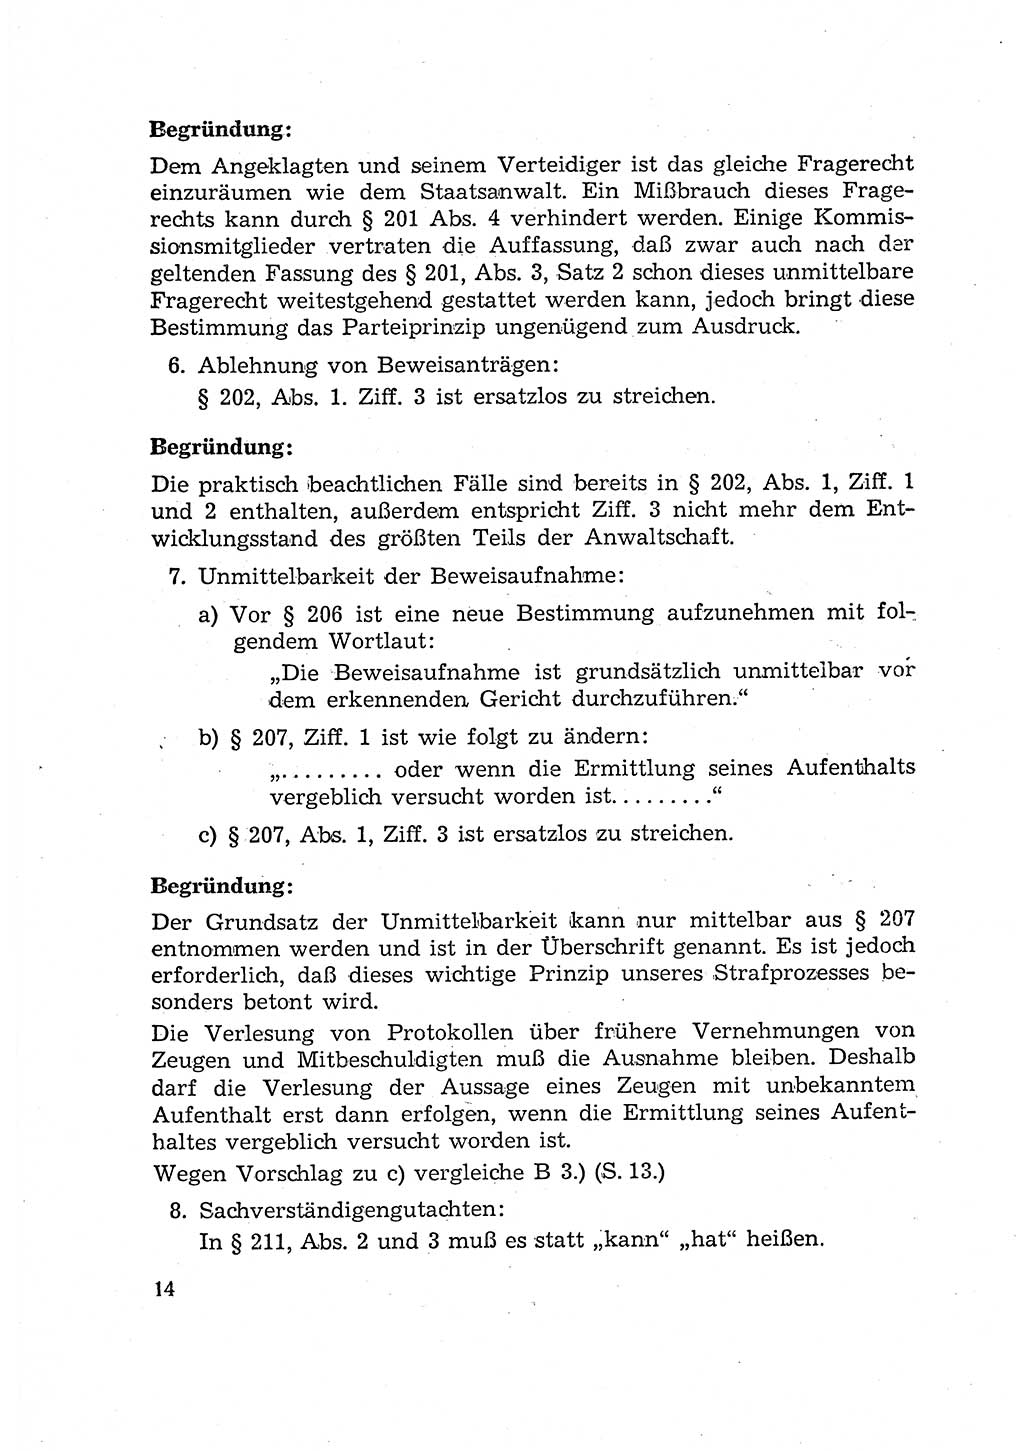 Bericht der Kommission zur Überprüfung der Anwendung der StPO (Strafprozeßordnung) [Deutsche Demokratische Republik (DDR)] 1956, Seite 14 (Ber. StPO DDR 1956, S. 14)